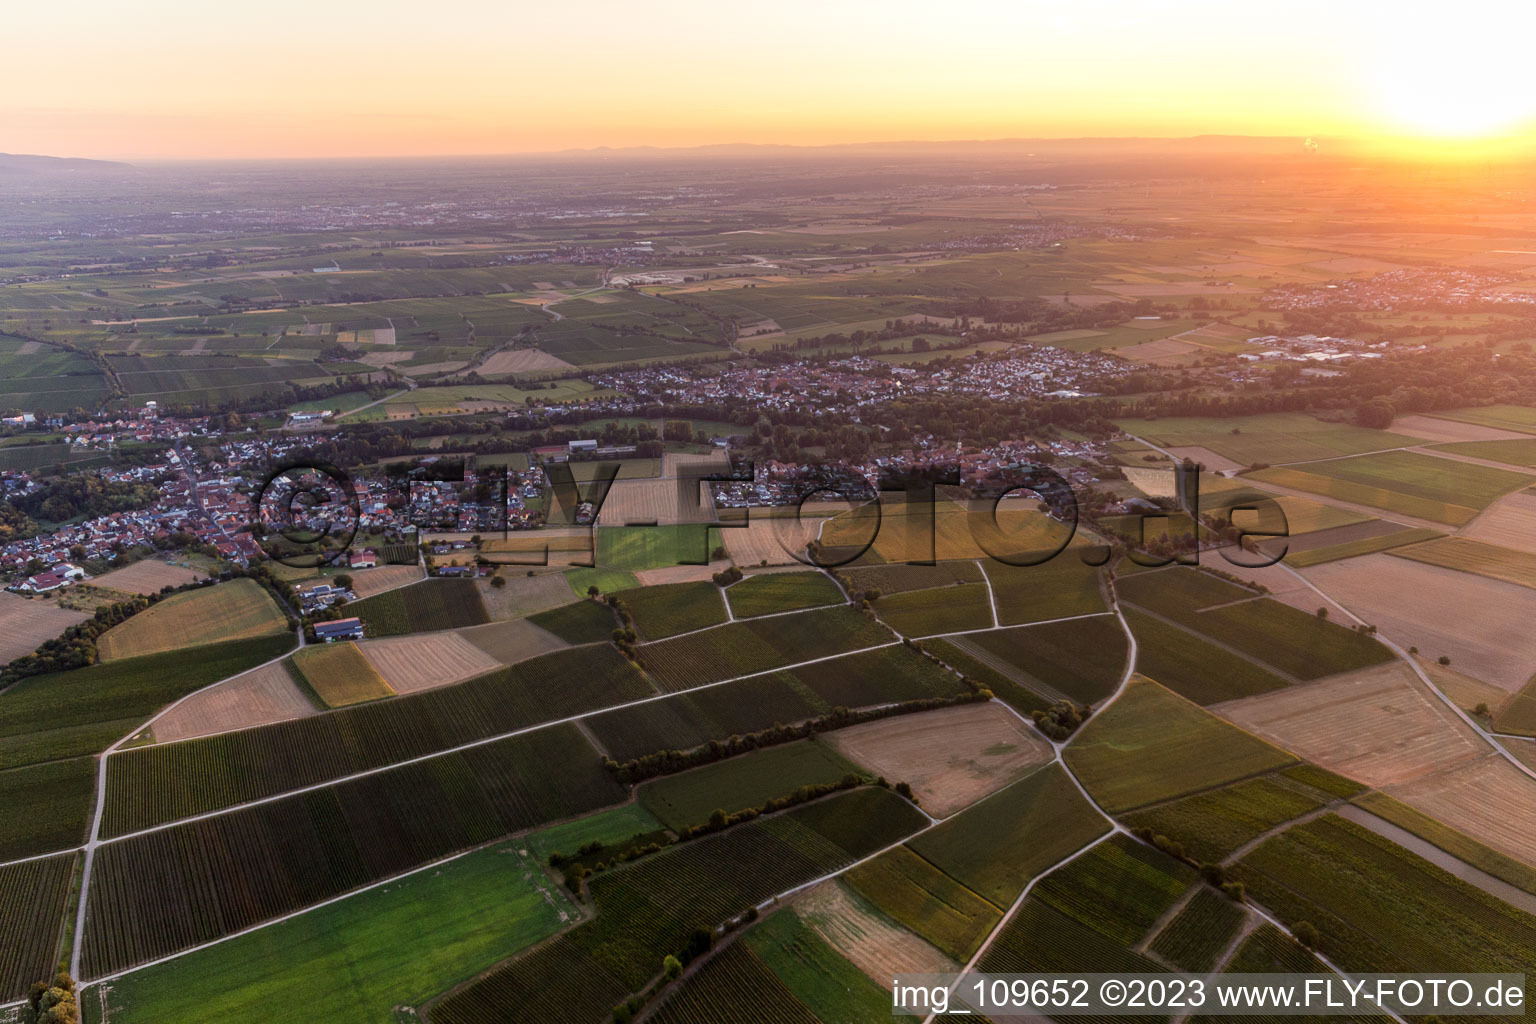 Image drone de Quartier Ingenheim in Billigheim-Ingenheim dans le département Rhénanie-Palatinat, Allemagne